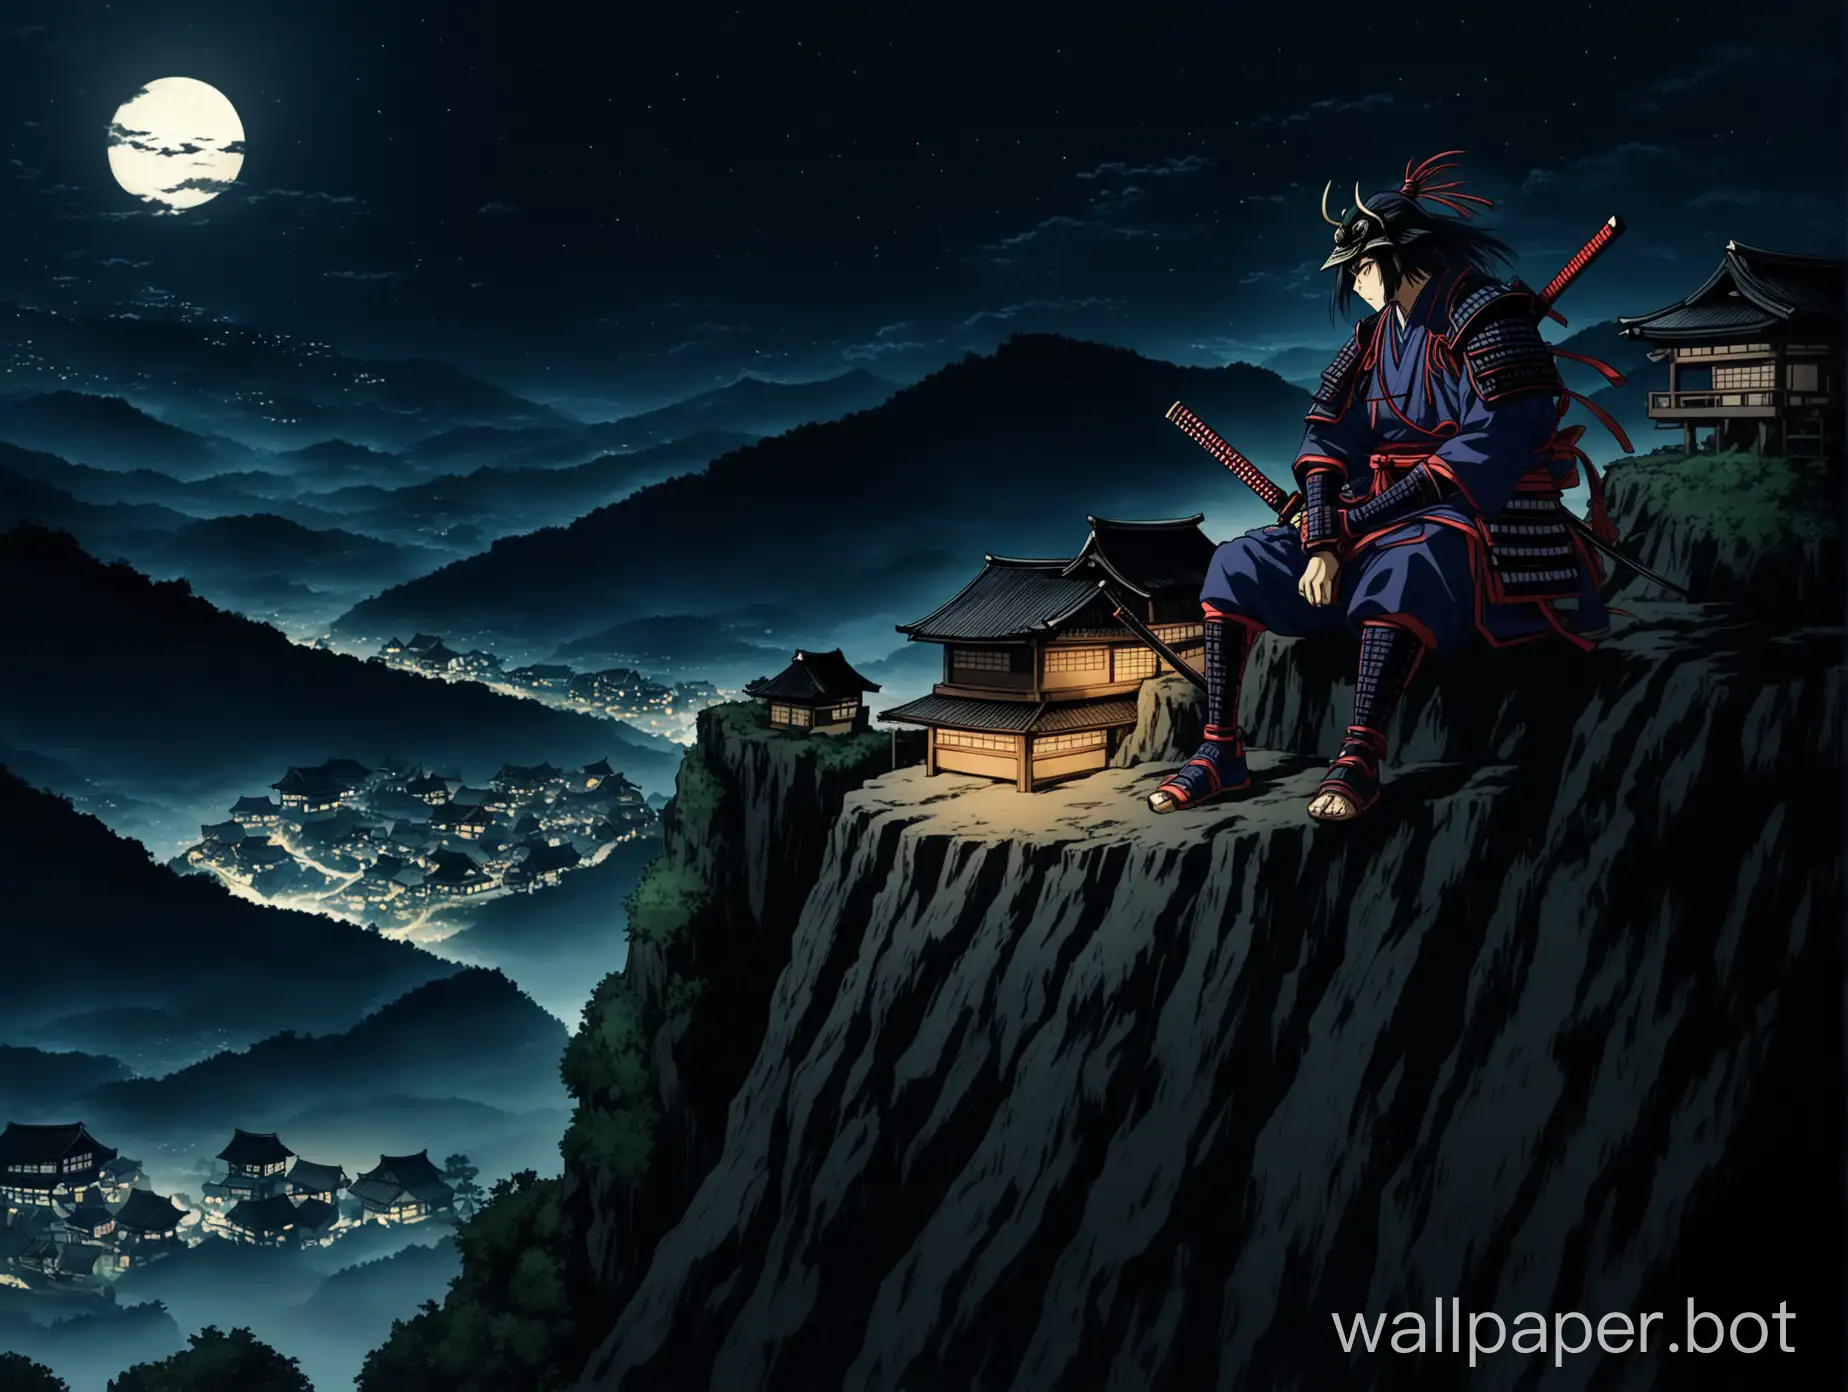 Anime-Samurai-Sitting-on-Cliff-Overlooking-Small-Village-in-Dark-Night